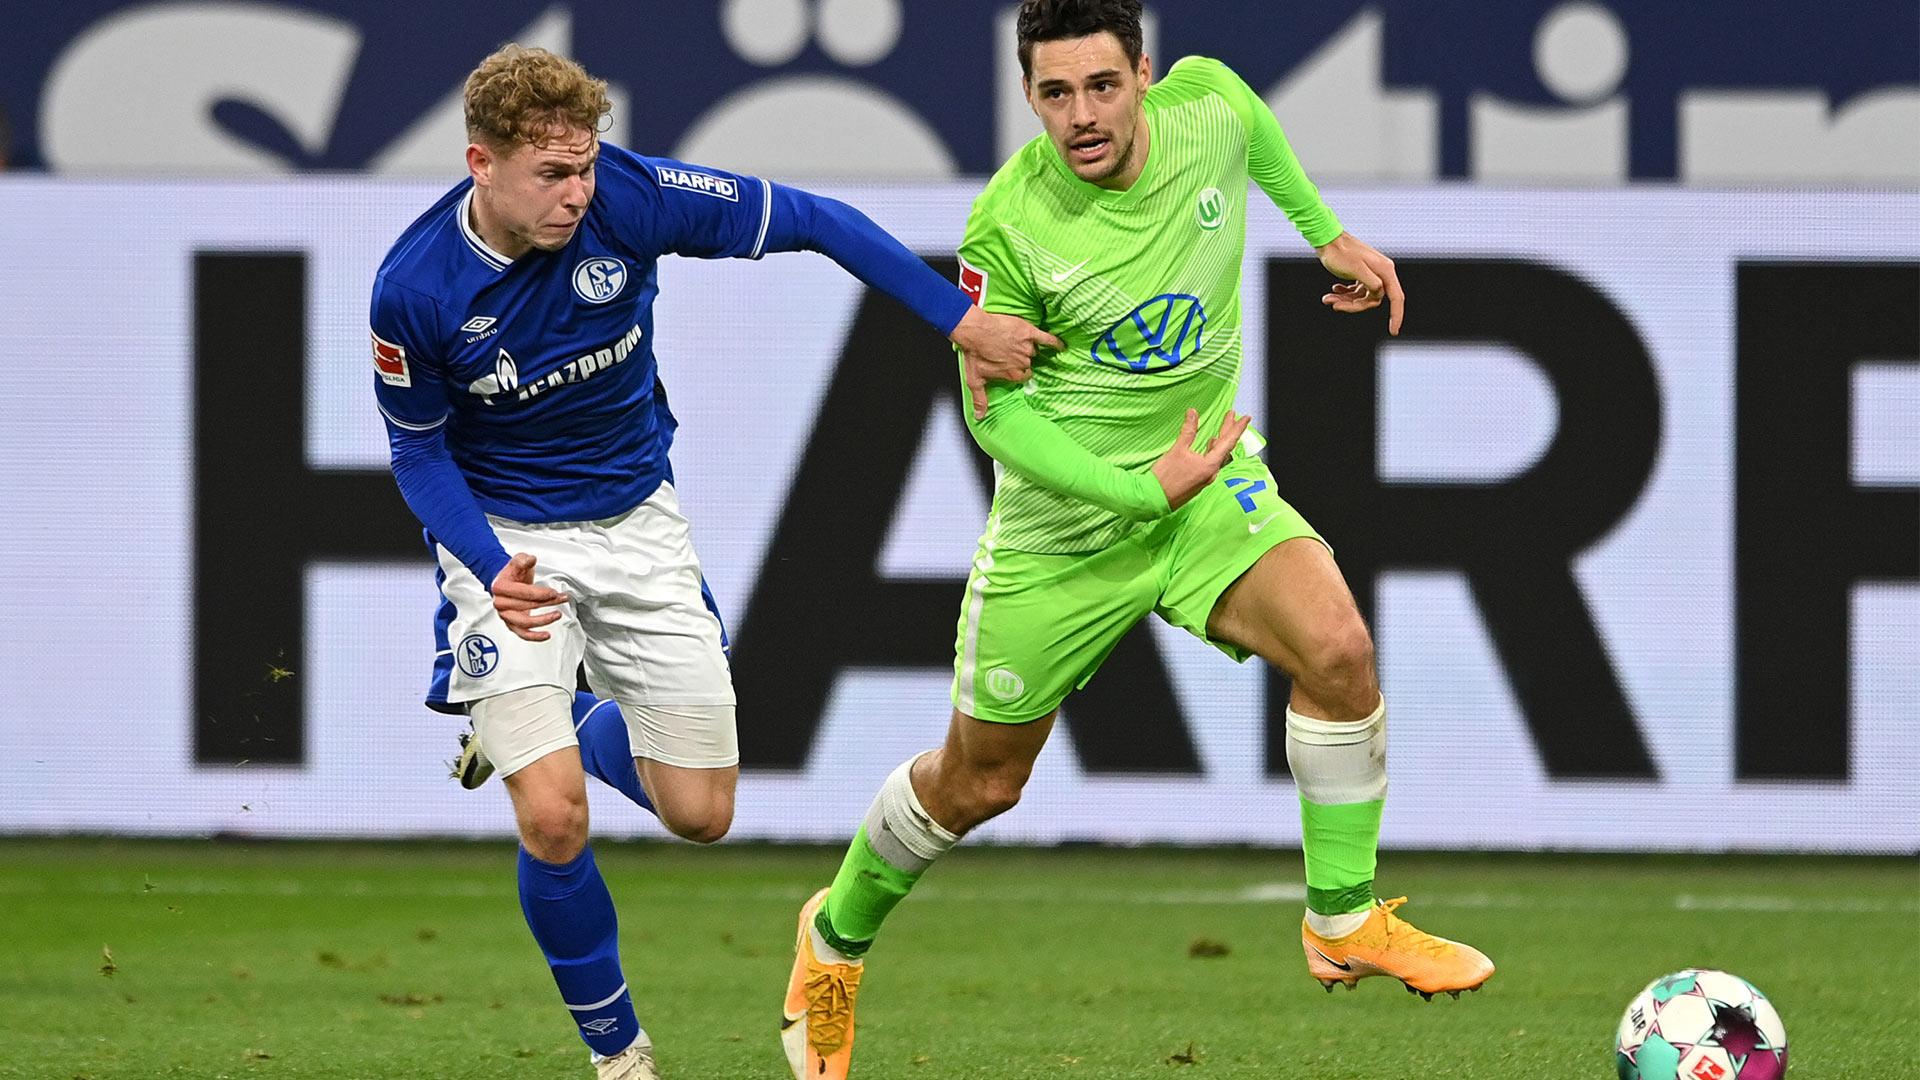 Josip Brekalo flitzt mit dem Ball am Fuß seinem Gegner von Schalke davon.